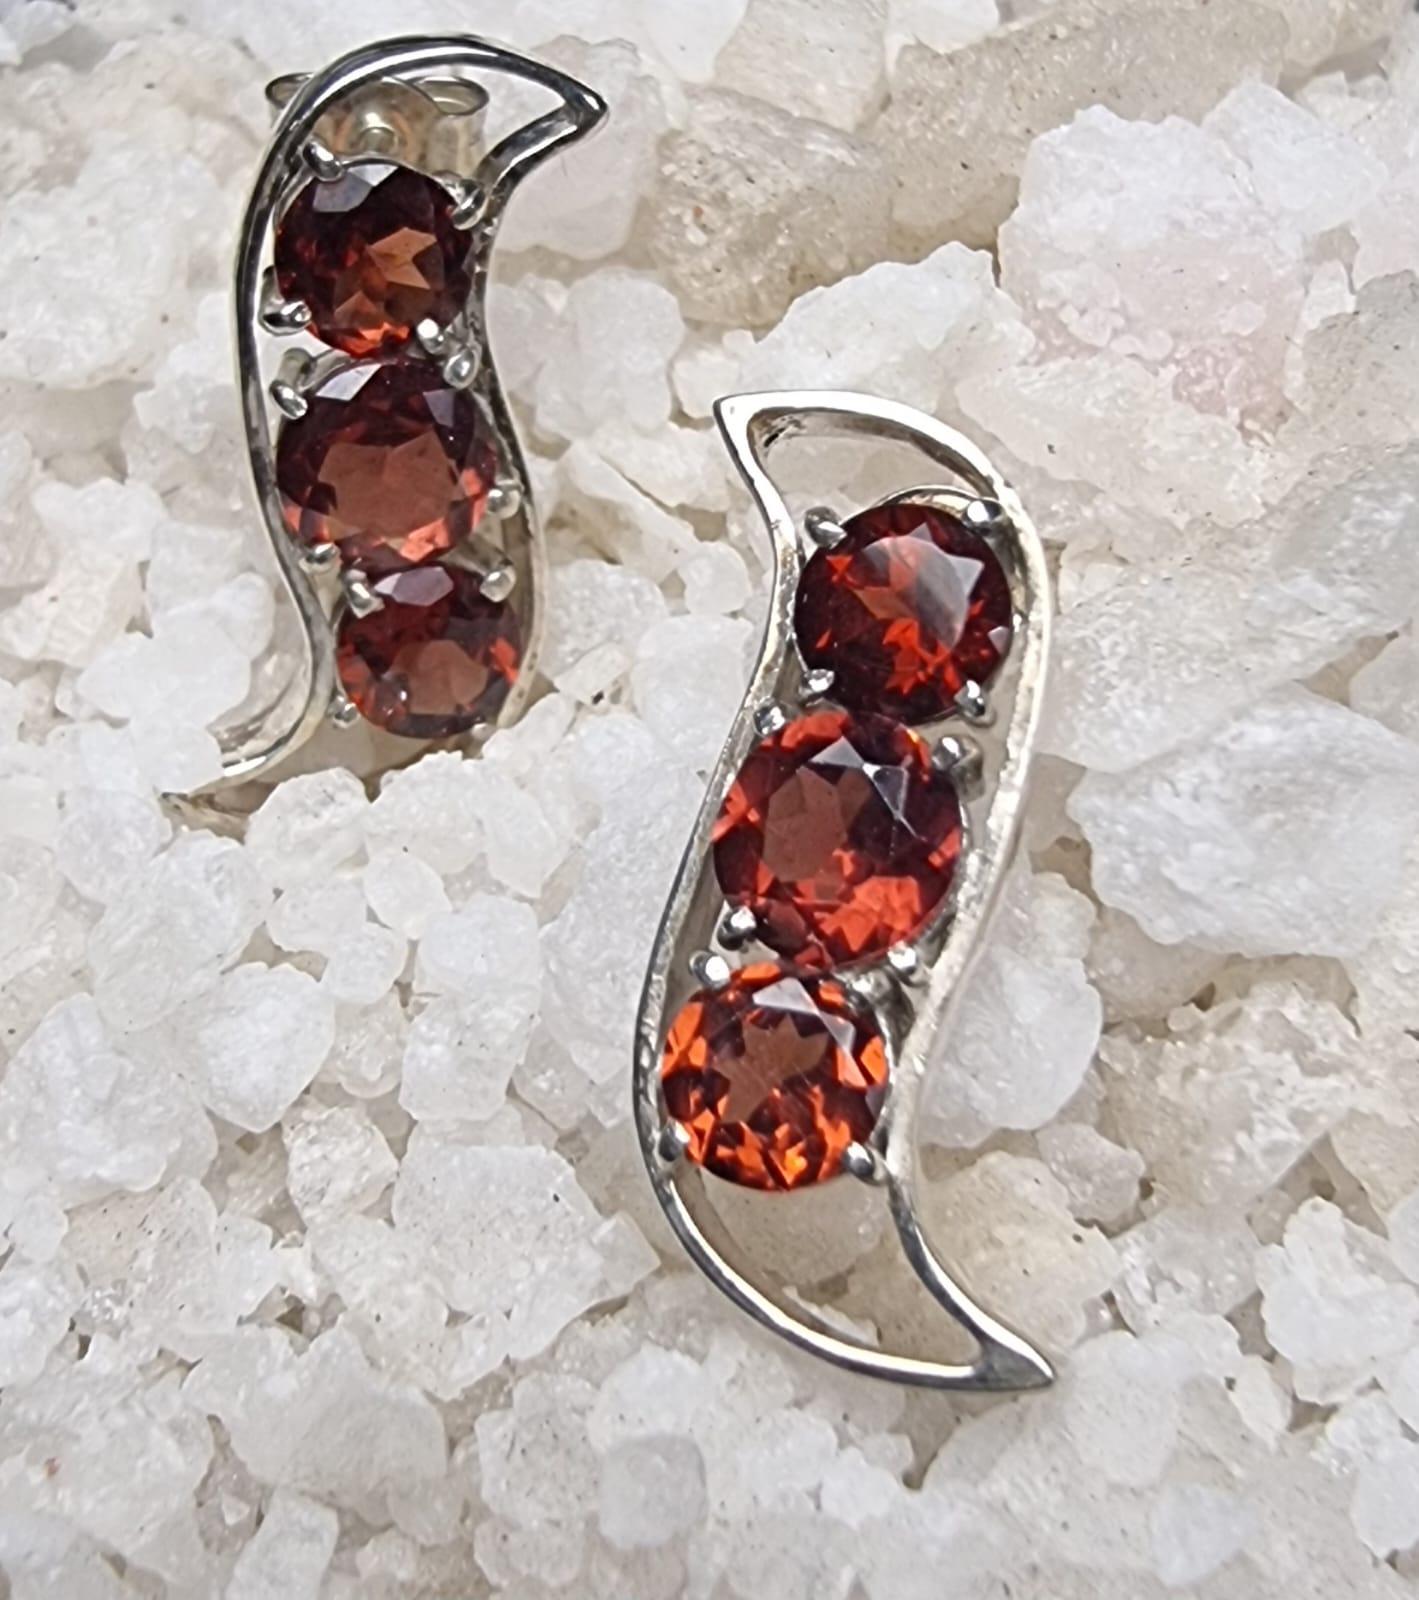 Unsere exquisiten Ohrstecker aus rotem Granat mit 3 Steinen sind eine bezaubernde Verschmelzung von Eleganz und Charme der Natur. Diese Ohrringe in Form einer Schote verkörpern die Essenz von Wachstum und Erneuerung, wobei drei leuchtende Granate